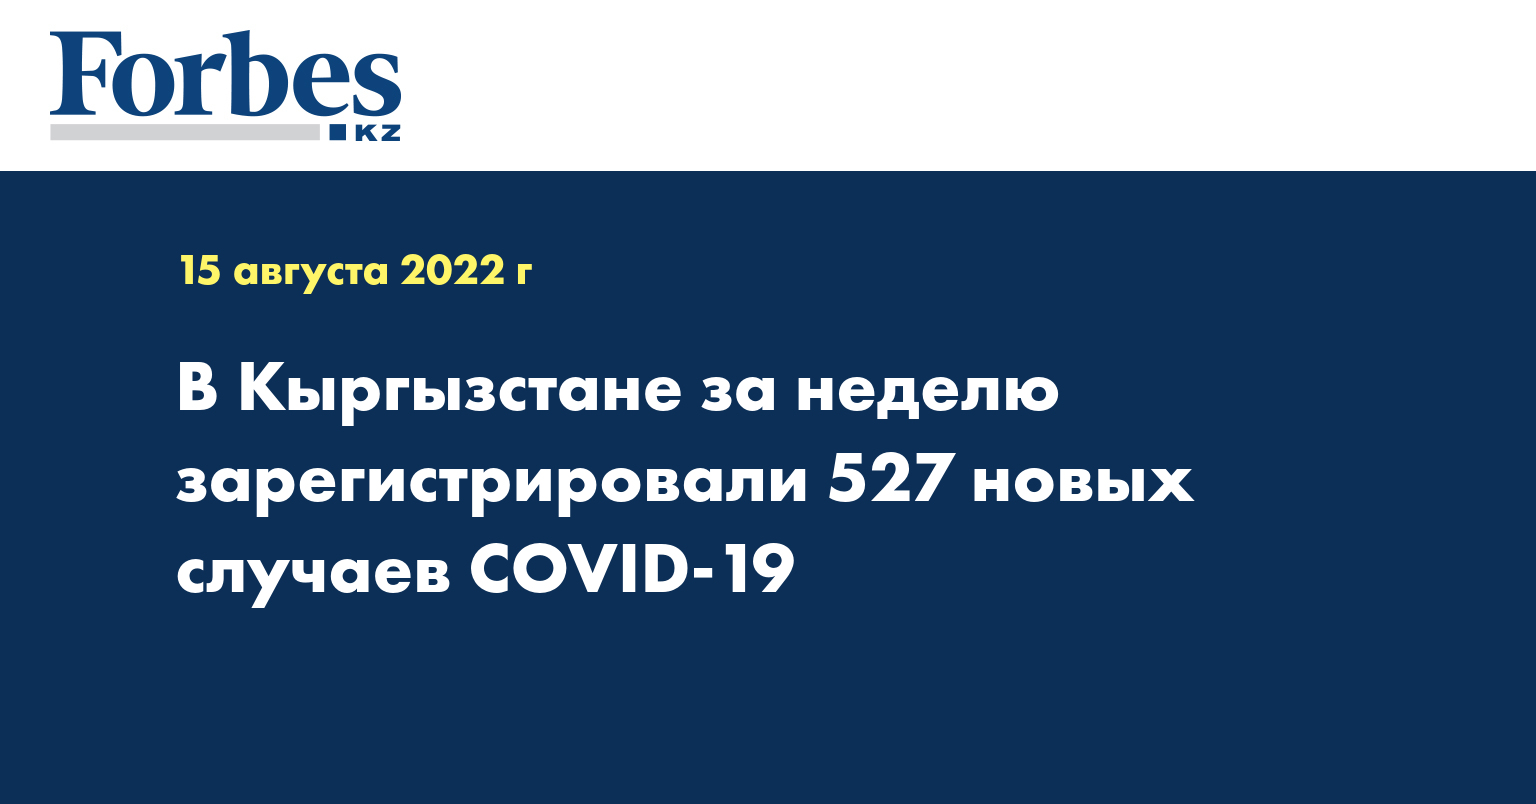 В Кыргызстане за неделю зарегистрировали 527 новых случаев COVID-19